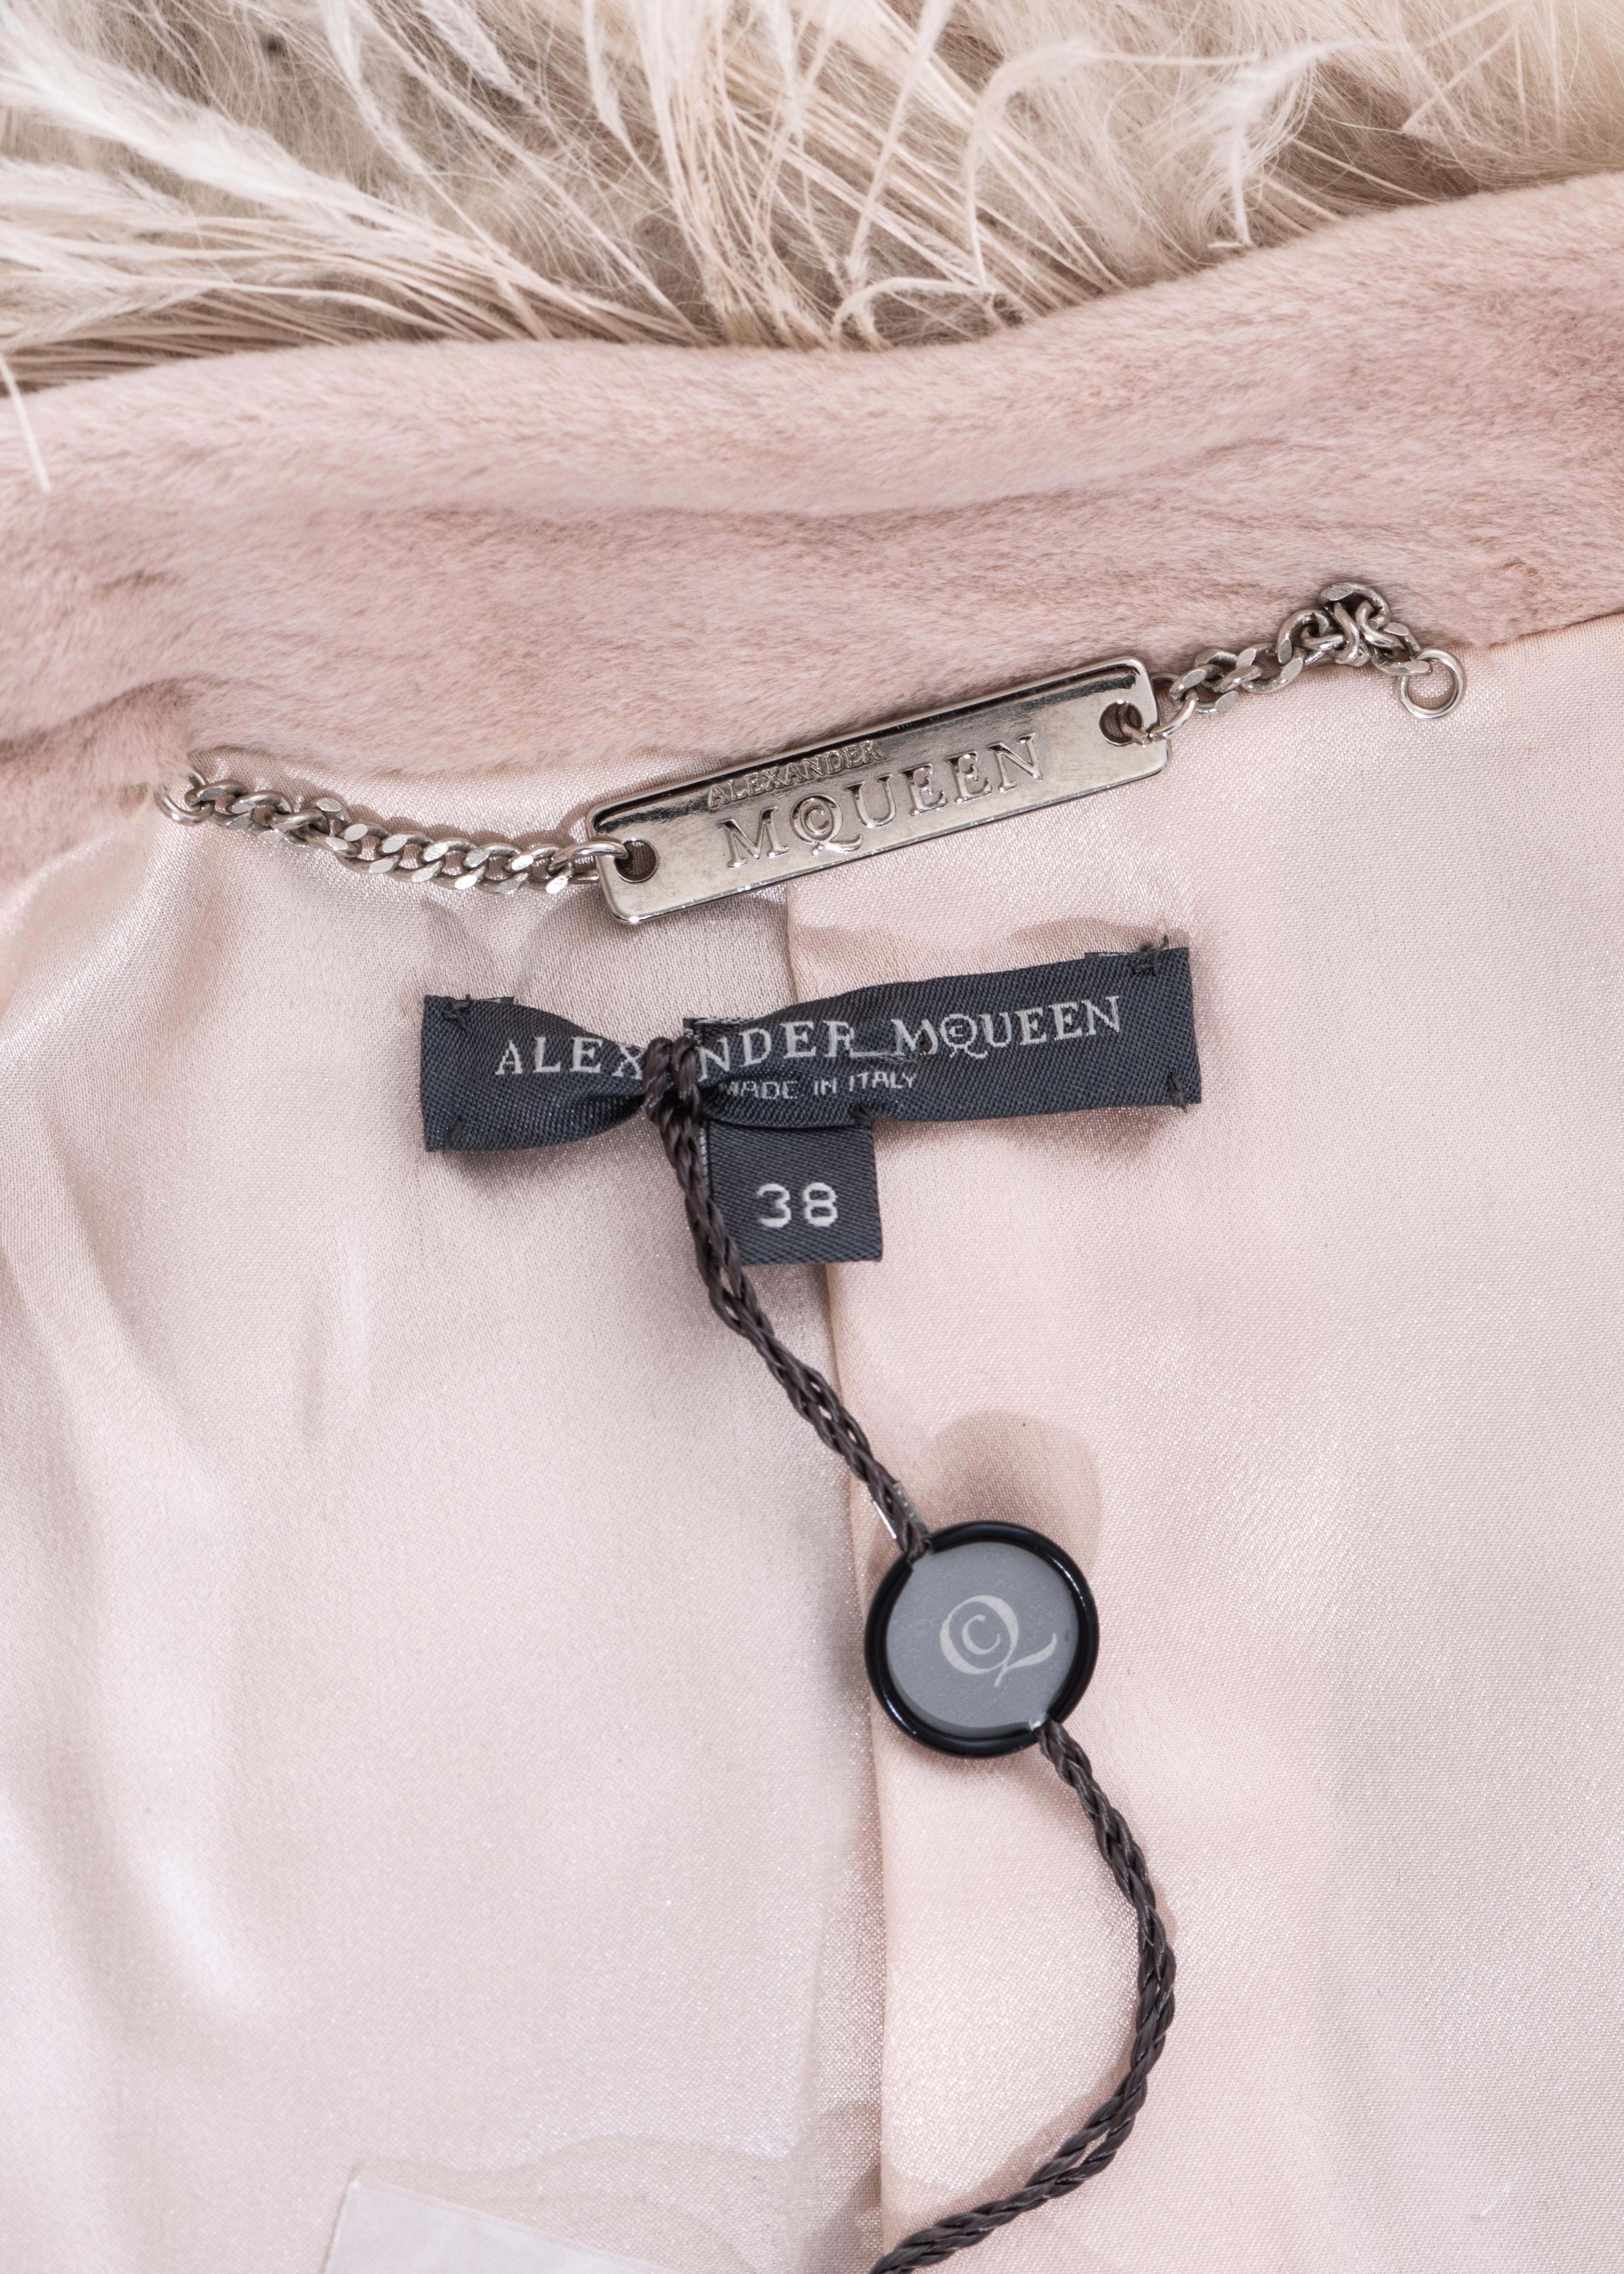 Alexander McQueen by Sarah Burton dusty pink fur coat, fw 2012 For Sale 5